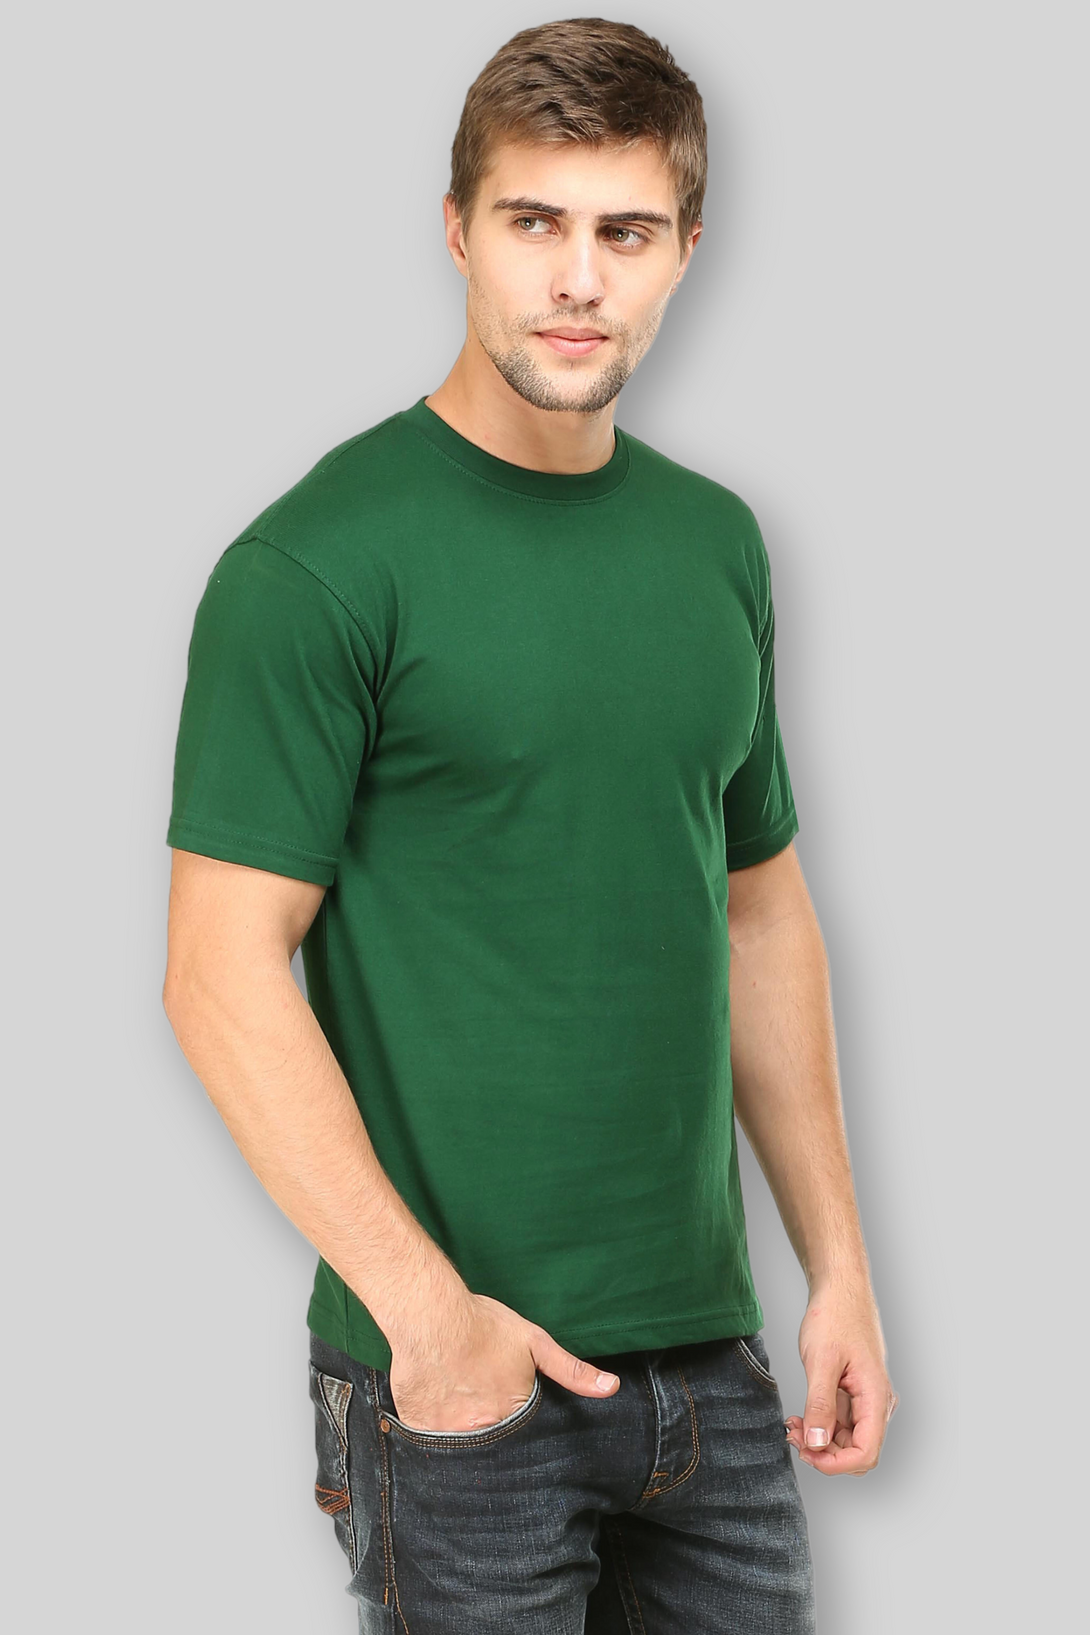 Bottle Green T-Shirt For Men - WowWaves - 3